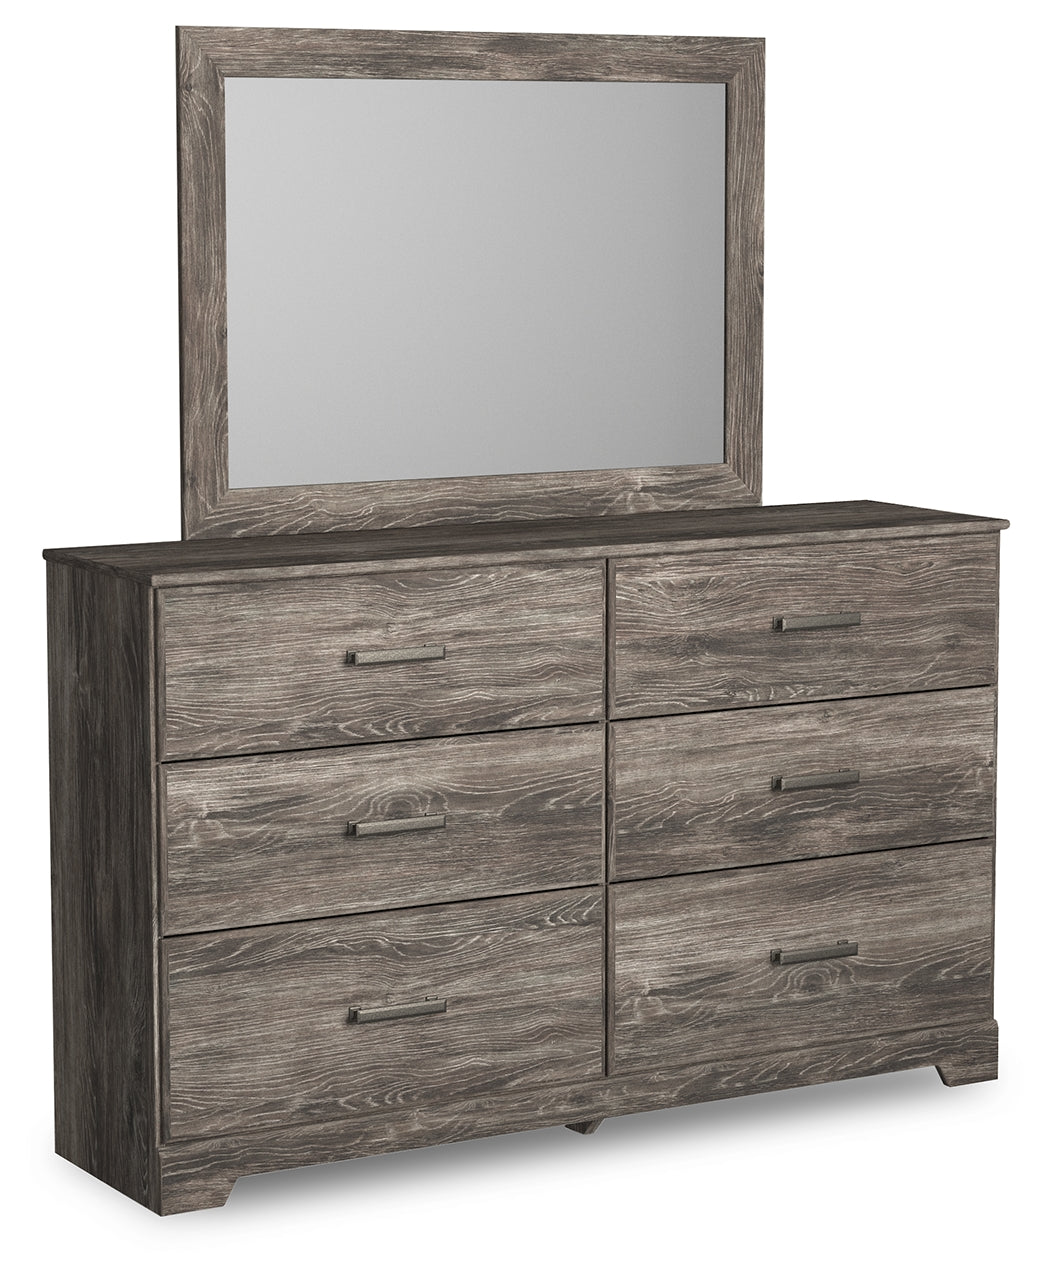 Ralinksi Full Panel Bedroom Set with Dresser and Mirror